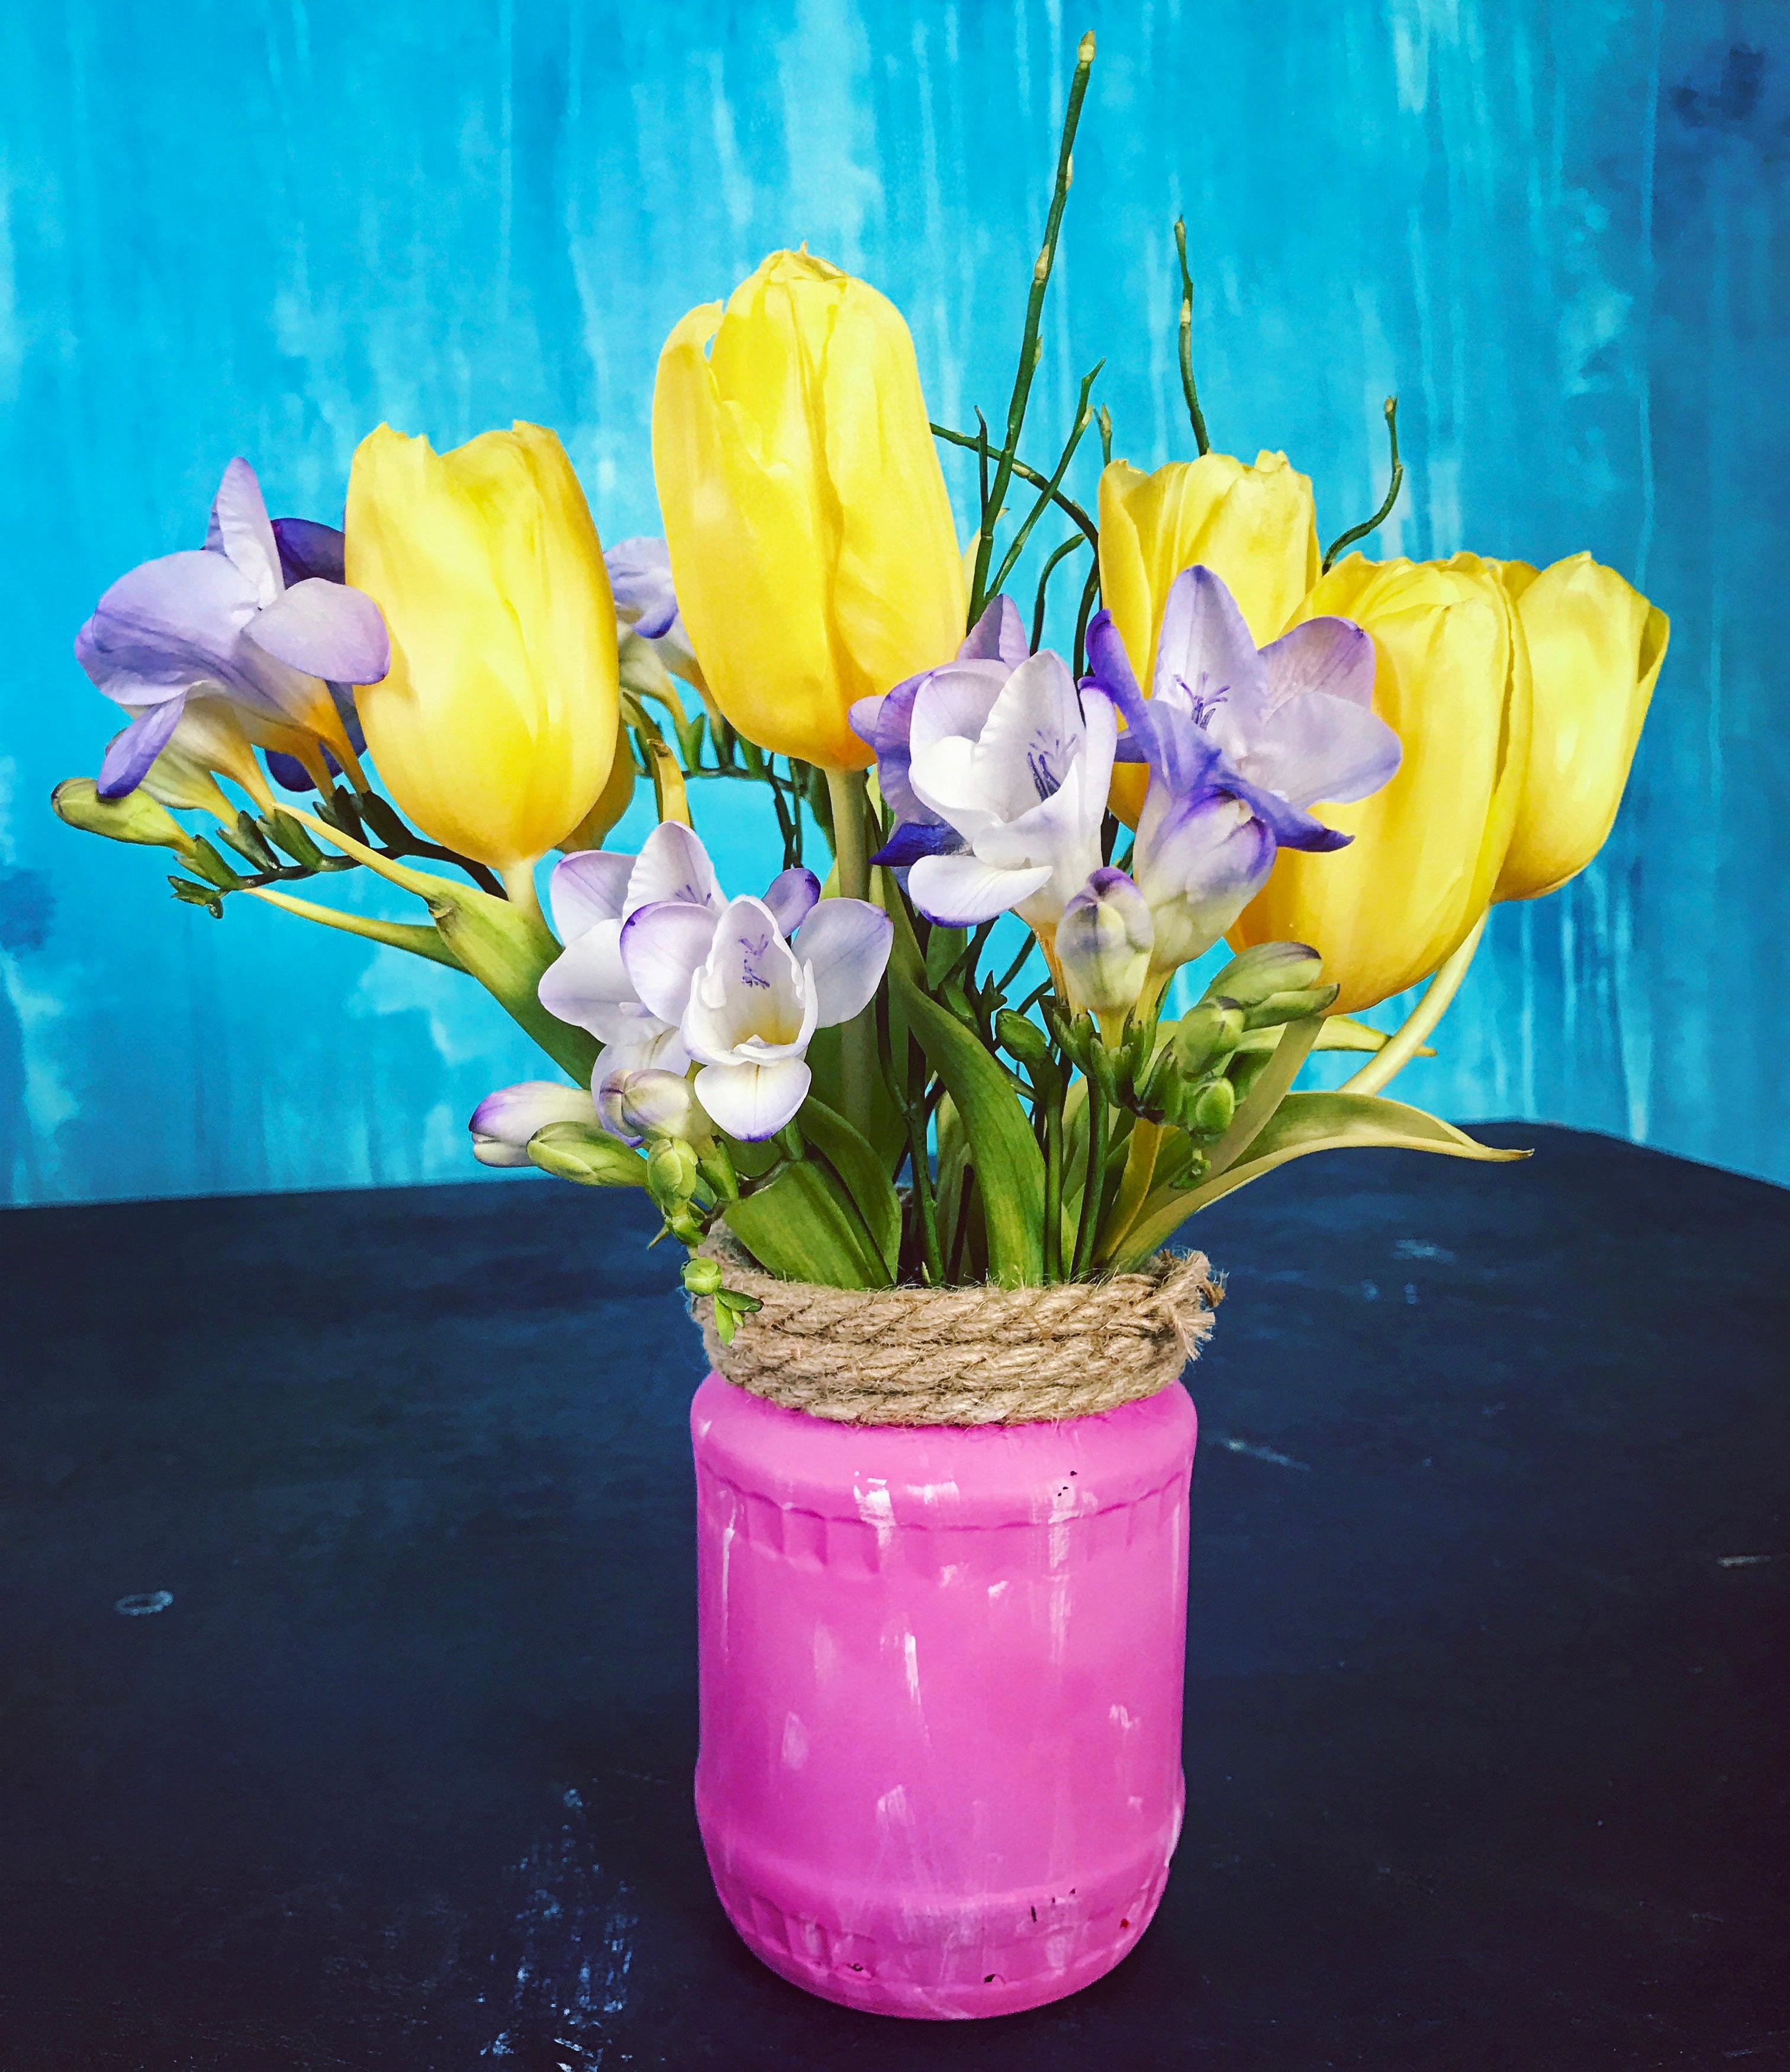 Selbstgemachte Vase mit Tau und Kreidefarbe.
#Diy #Vase #Blumen #farbenfroh 